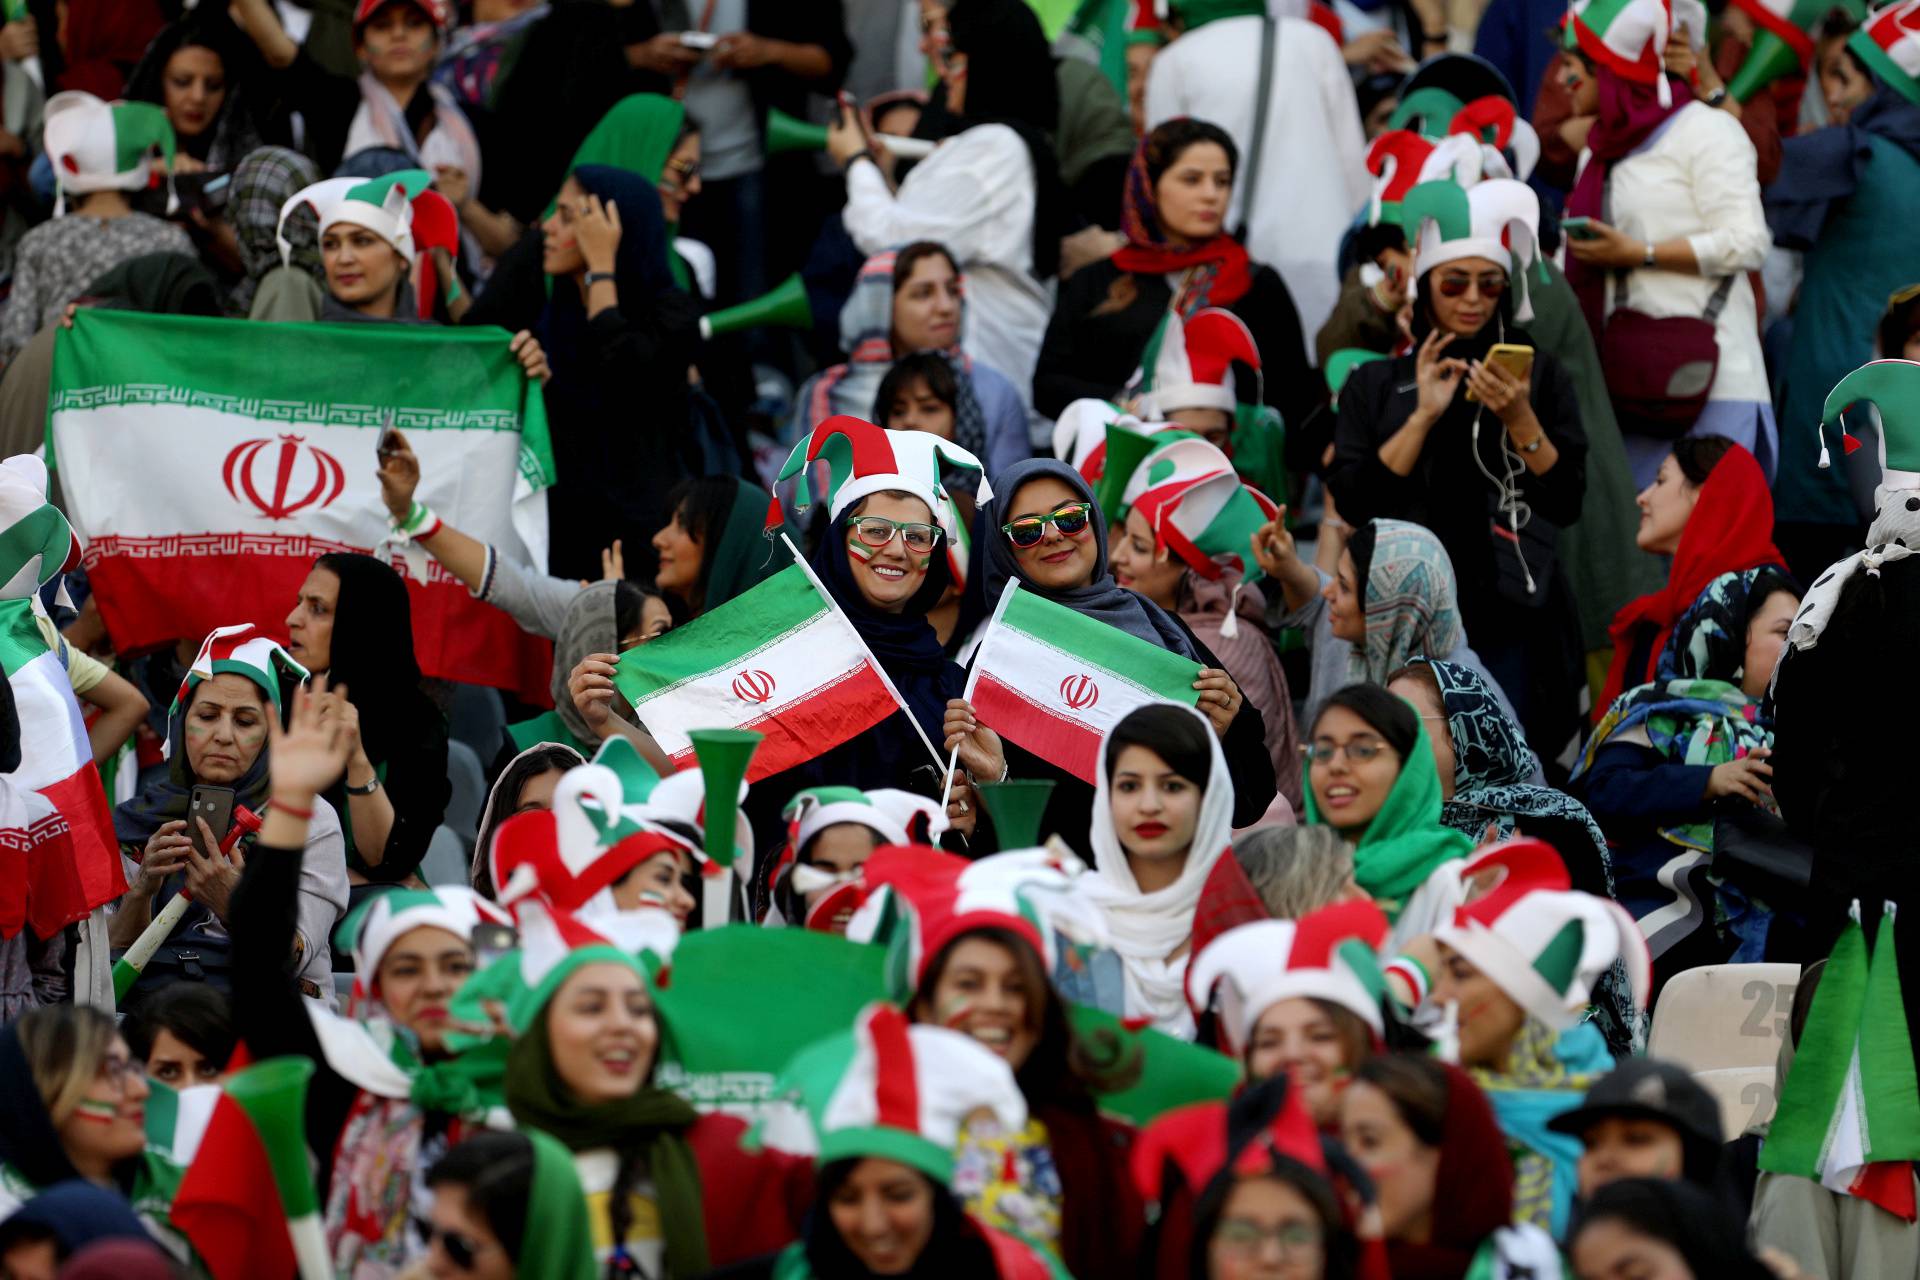 Iranian women fans attend Iranâs FIFA World Cup Asian qualifier match against Cambodia, as for the first time women are allowed to watch the national soccer team play in over 40 years, at the Azadi stadium in Tehran